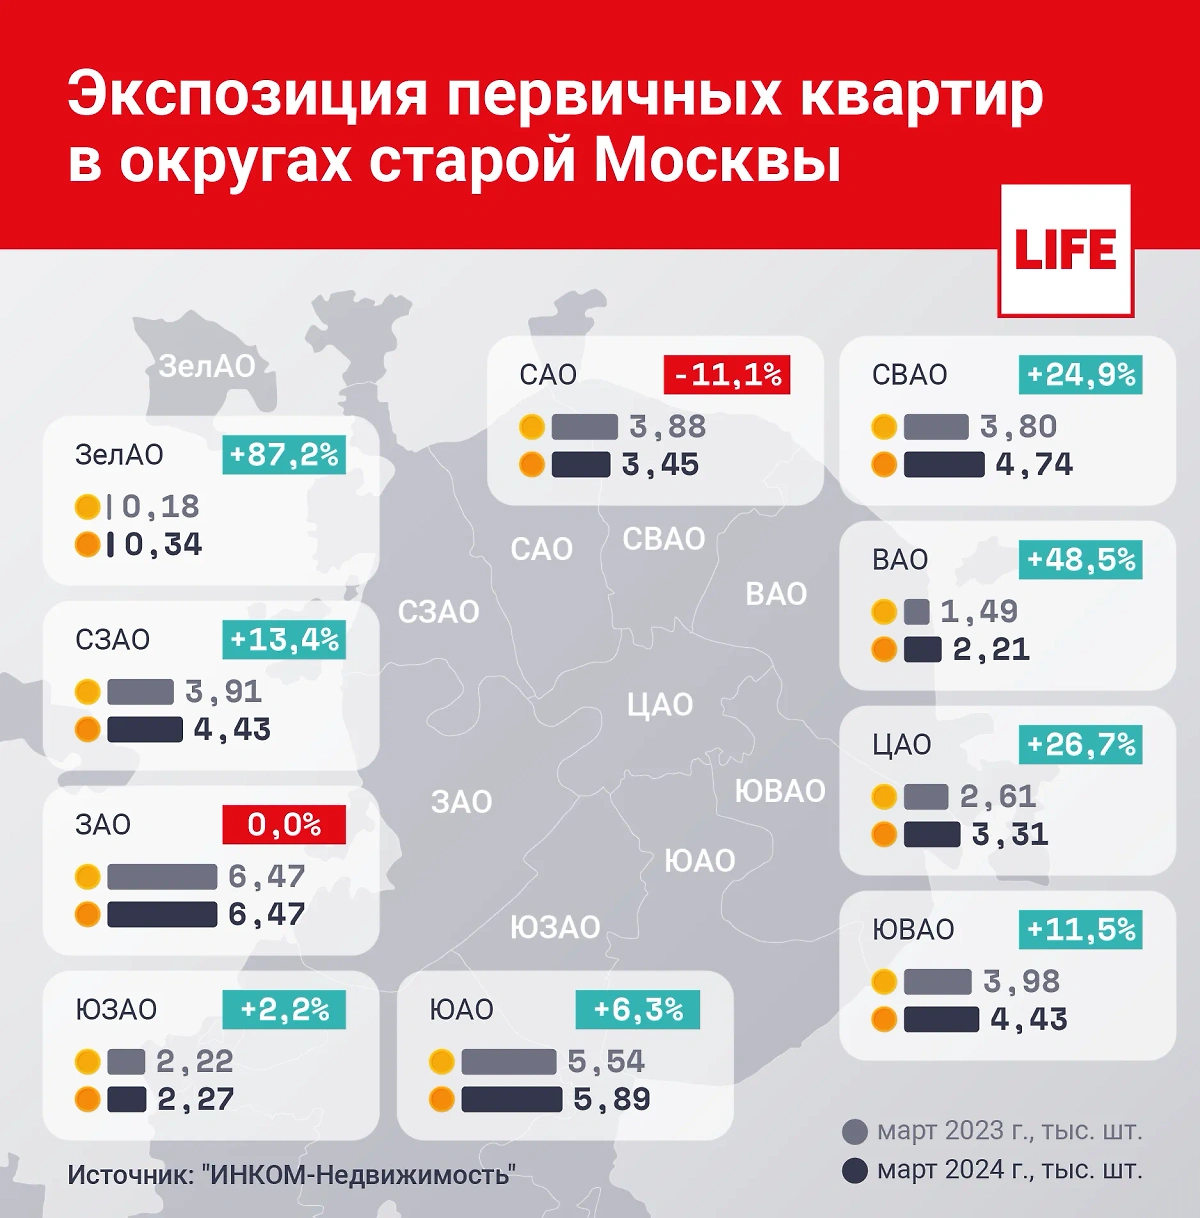 Инфографика © Life.ru 